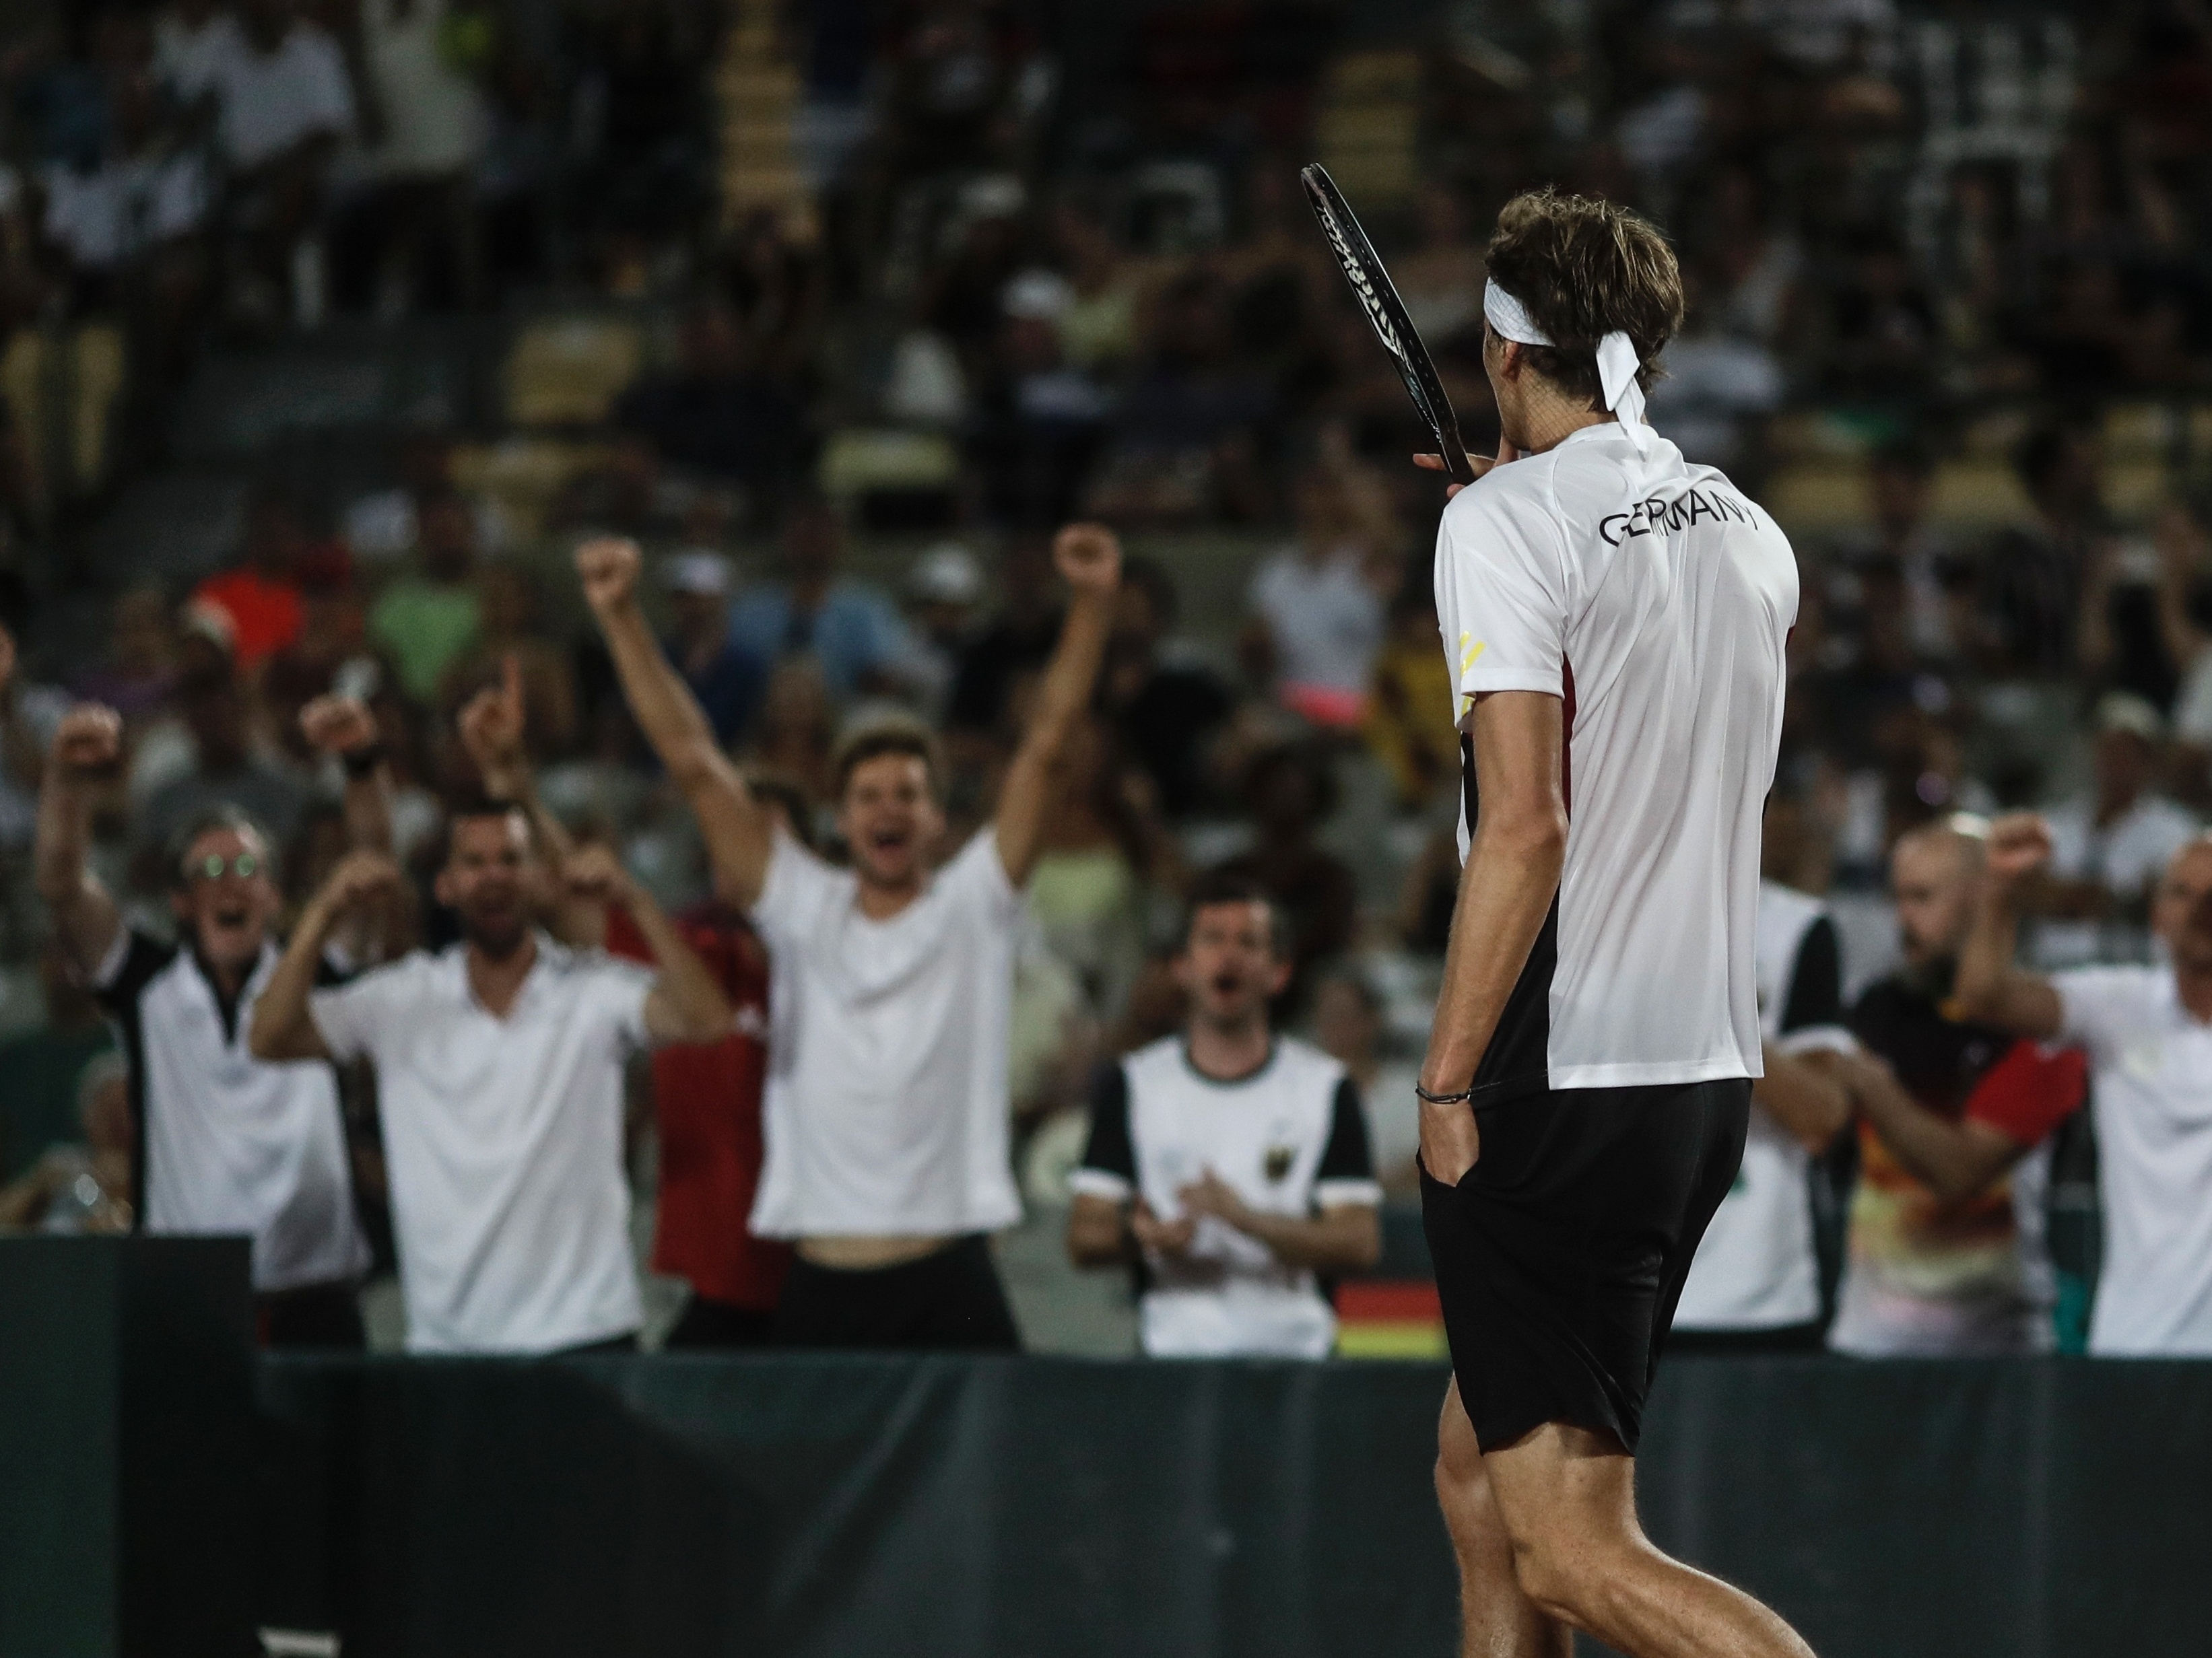 Copa Davis: Rio será sede de jogos do Brasil contra a Alemanha